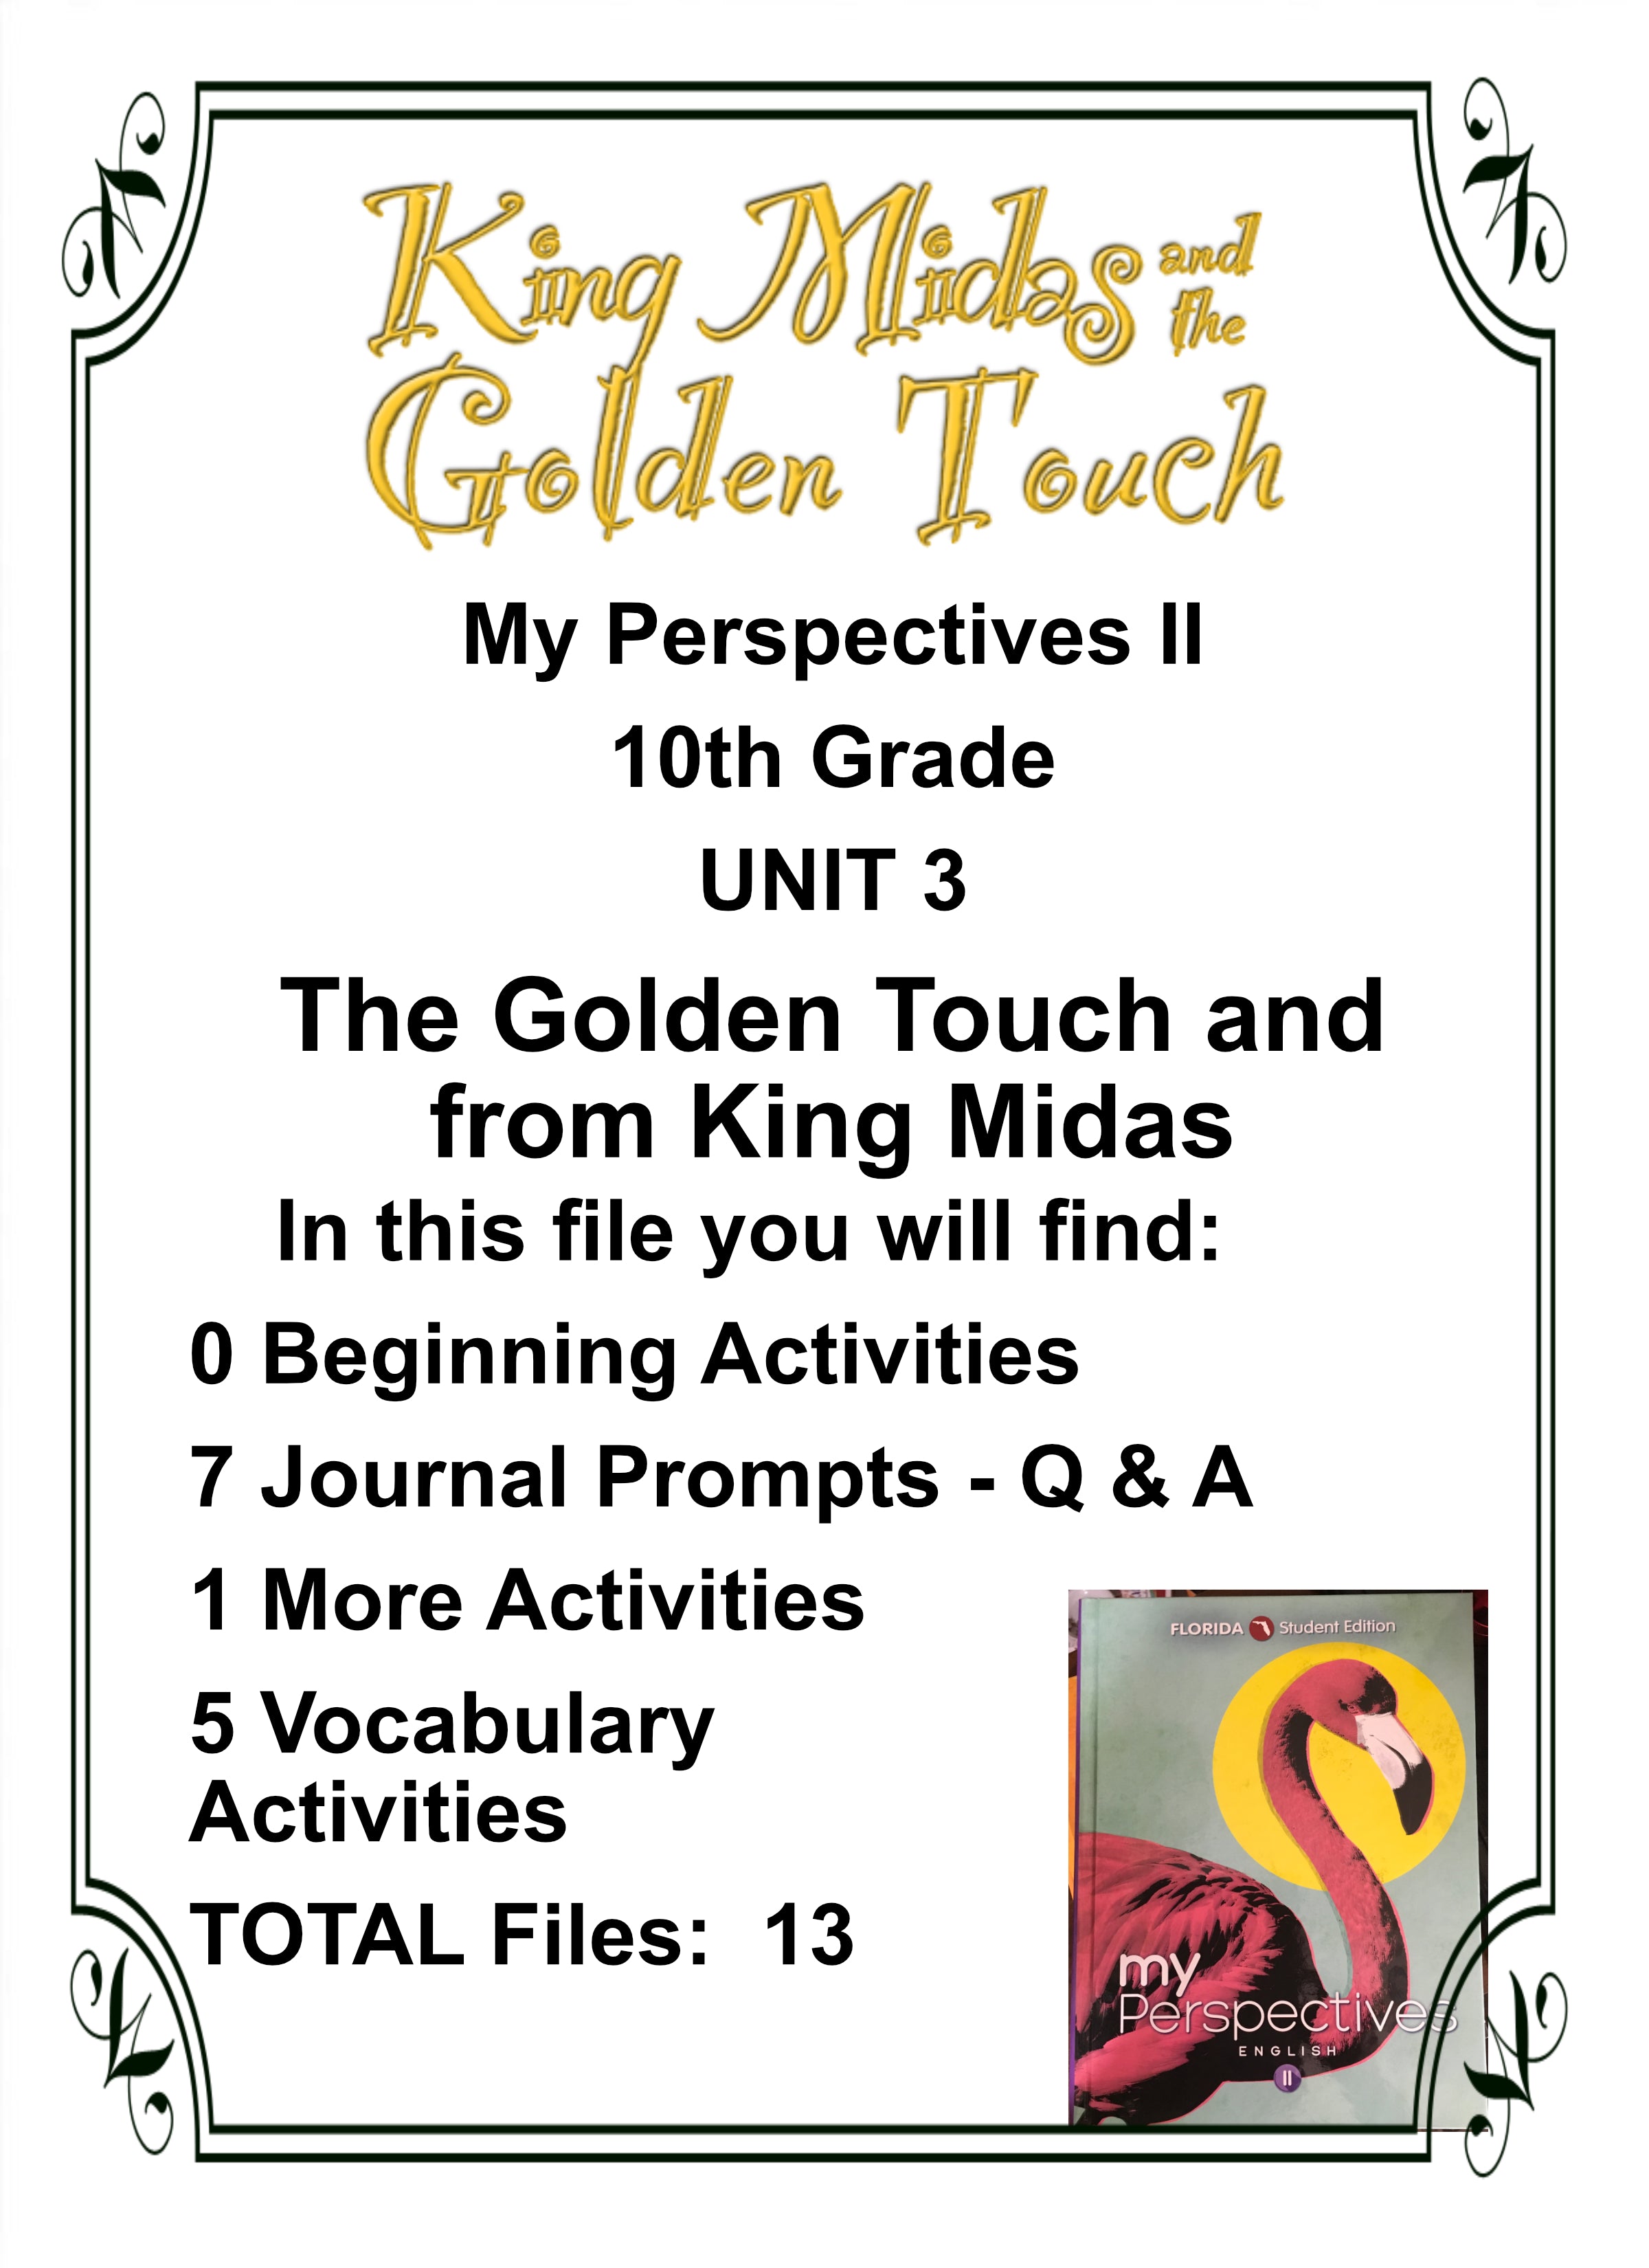 The Midas Touch - Midas - Sticker